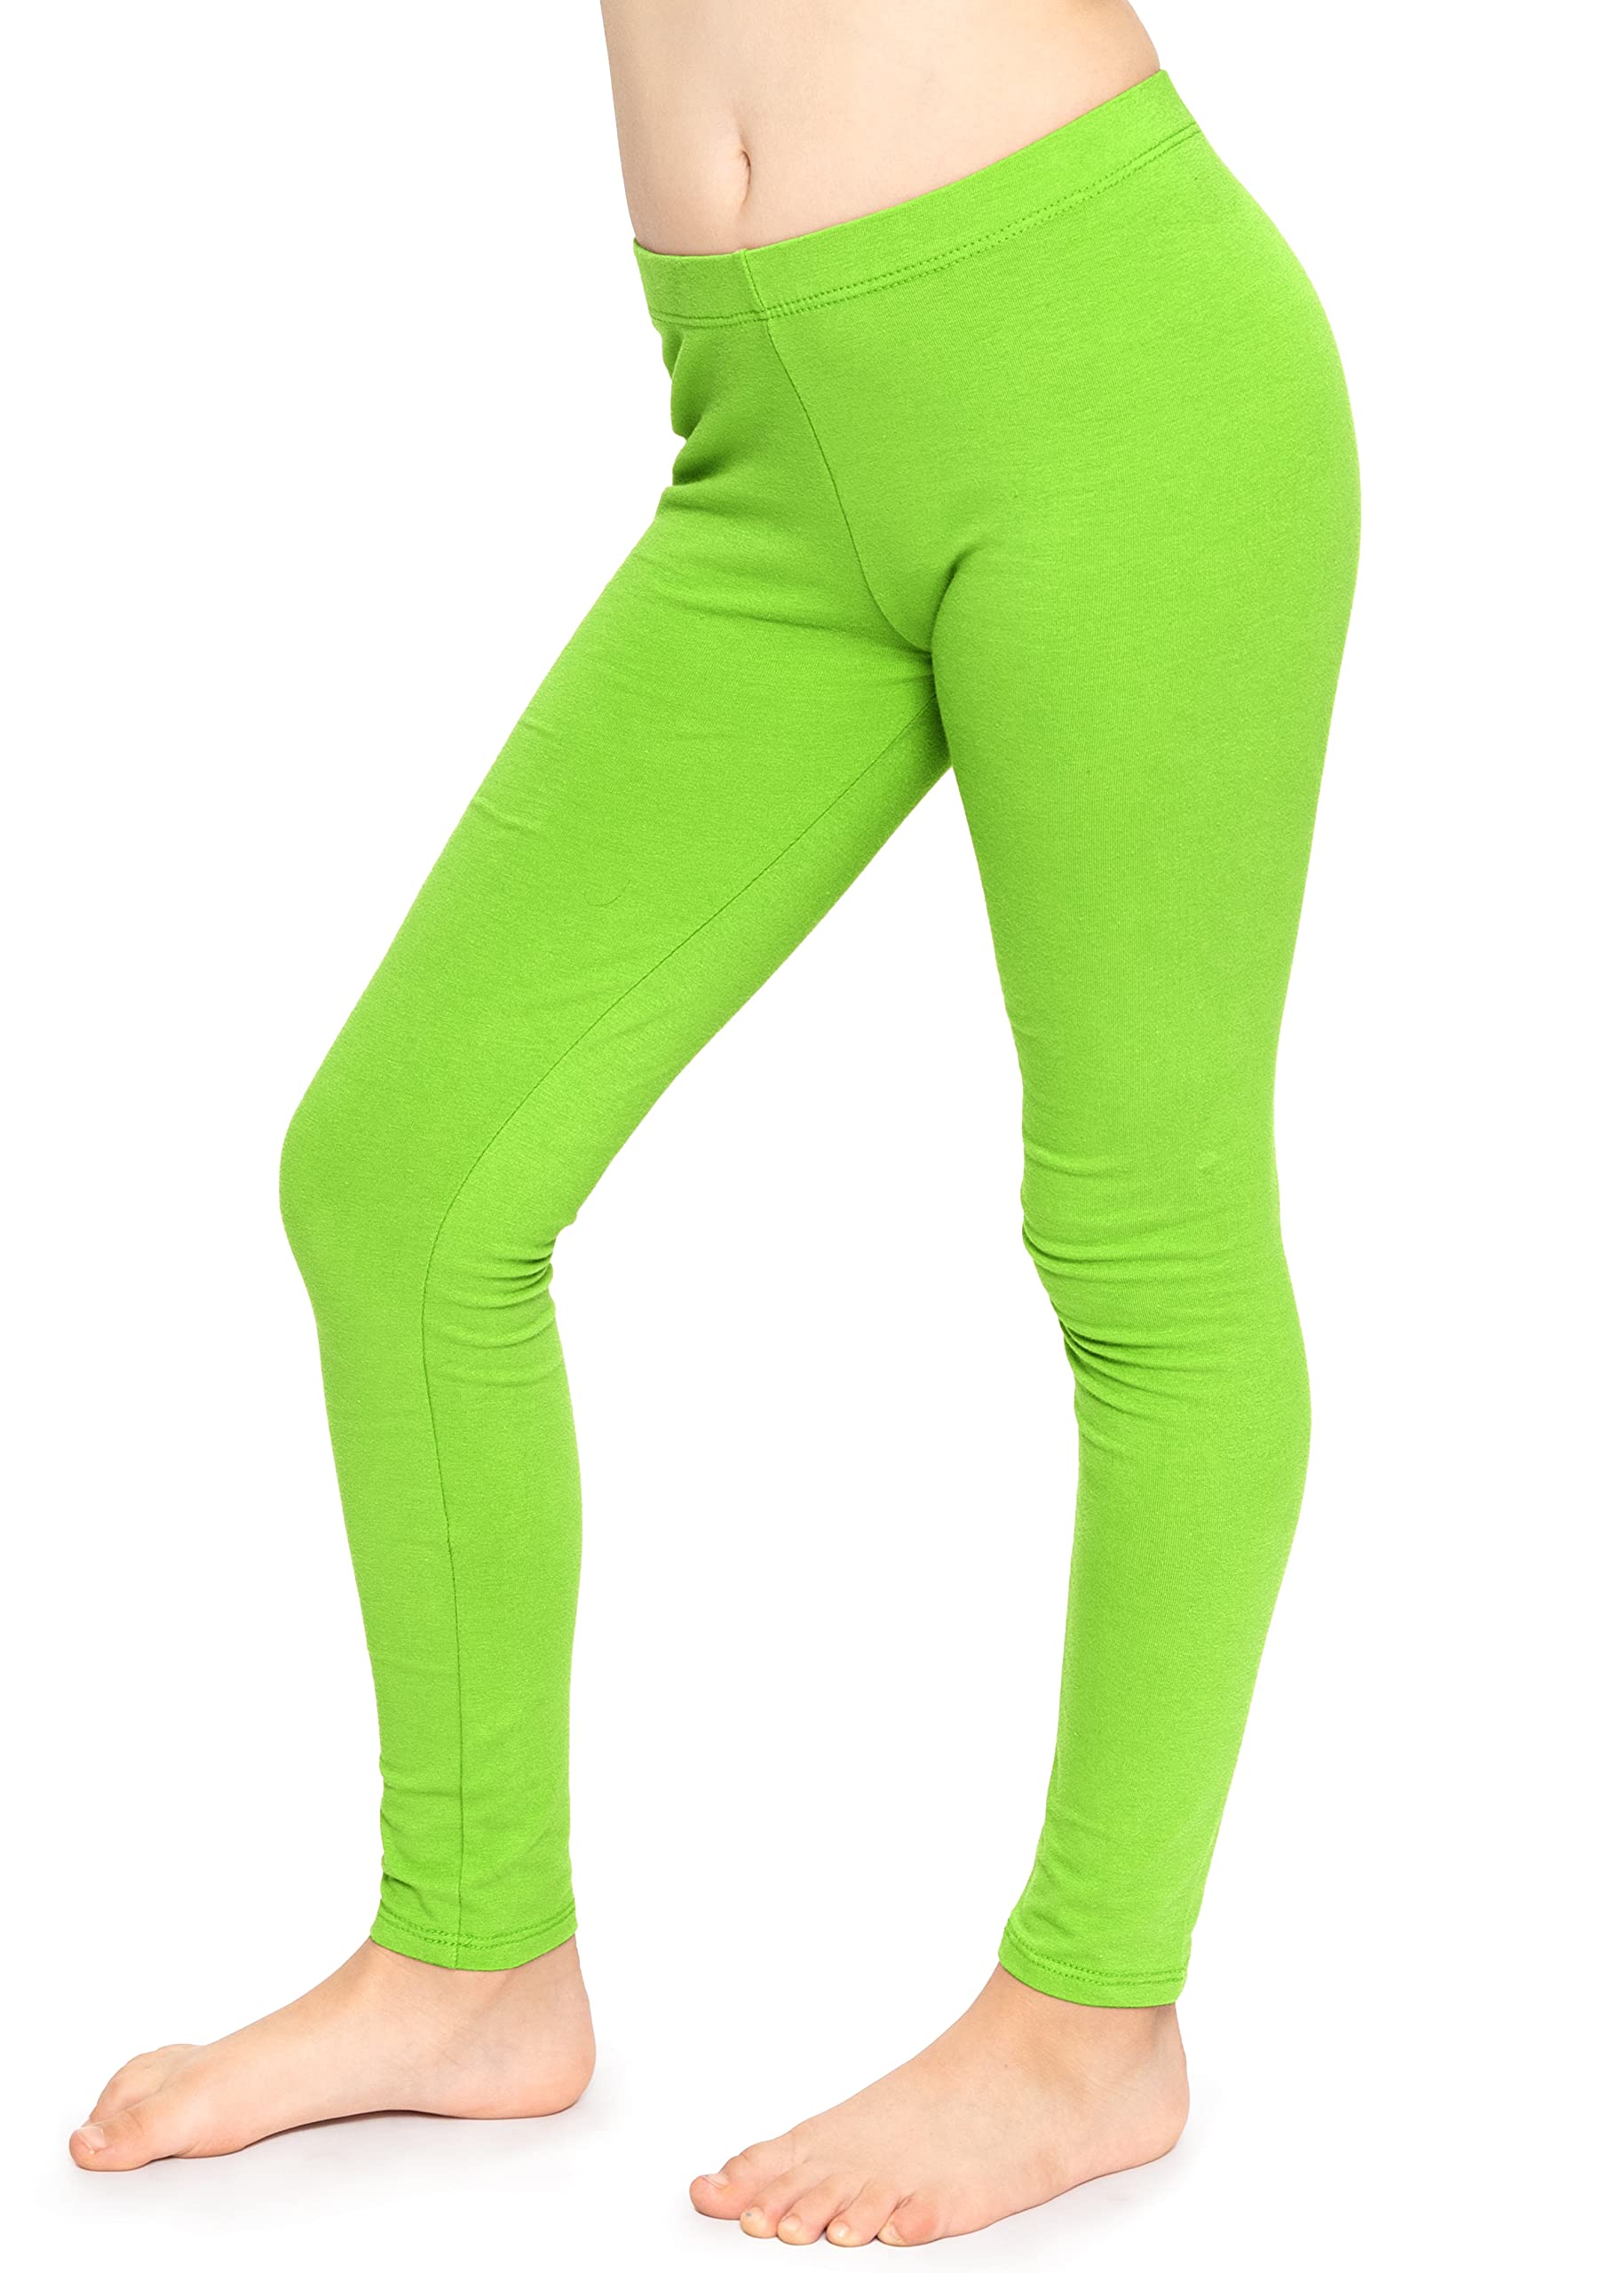 kmart green leggings